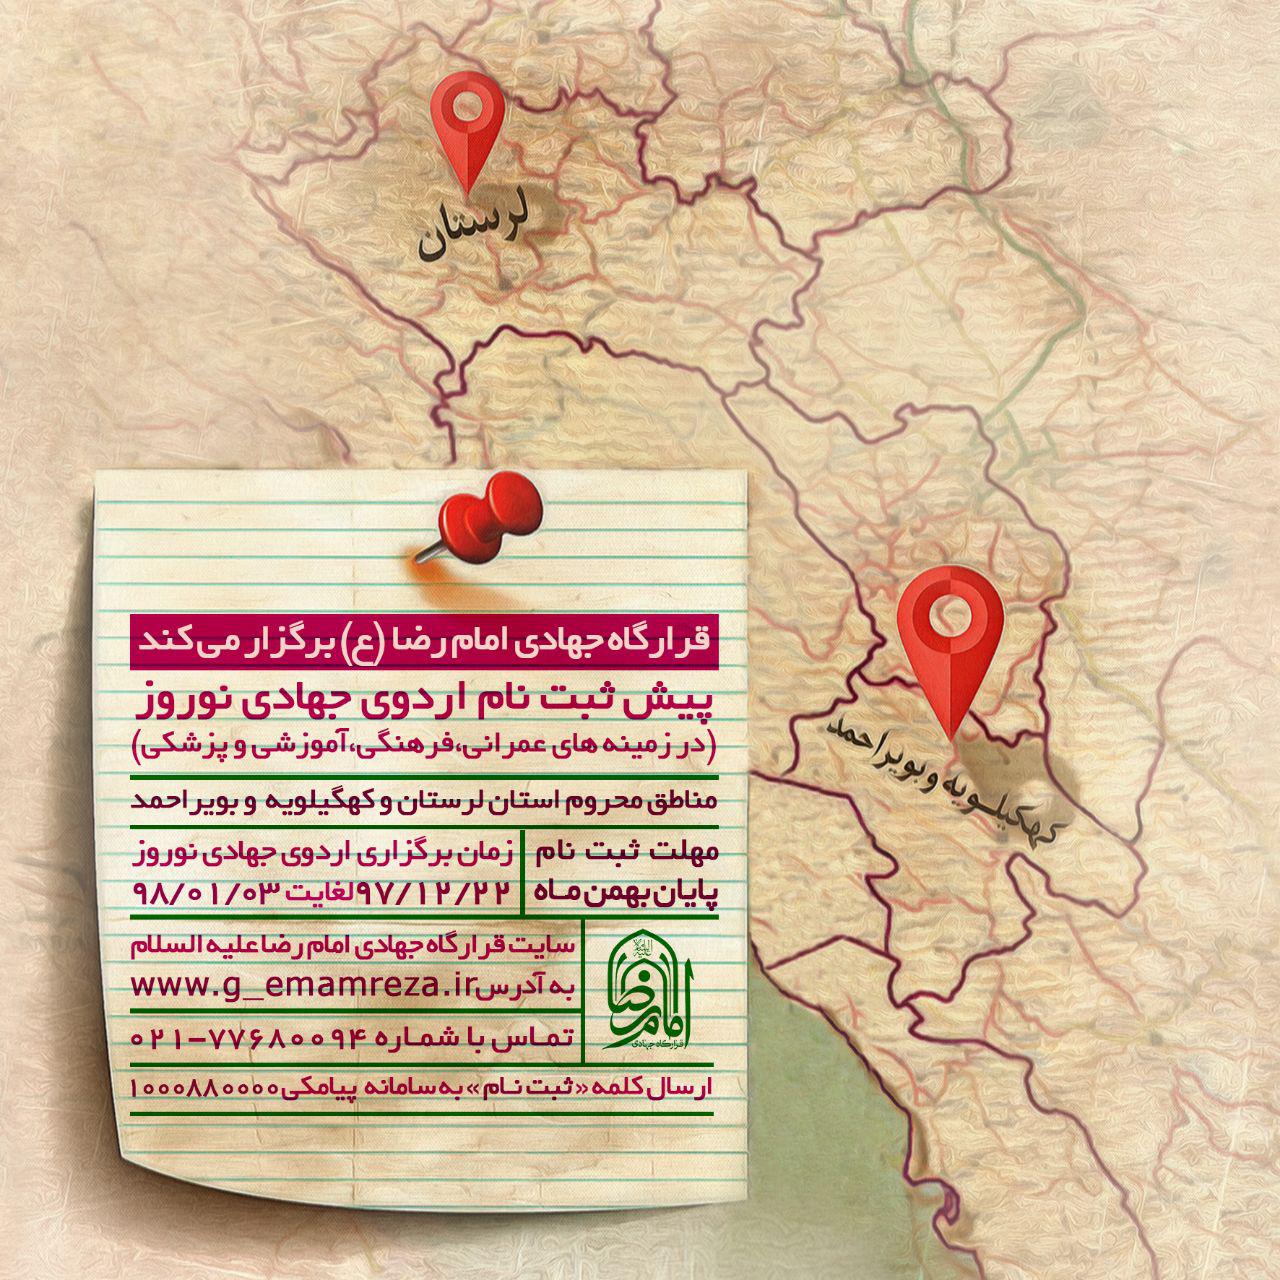 قرارگاه جهادی امام رضا (ع) اردوی جهادی نوروز ۹۸ را  در مناطق محروم برگزار می‌کند